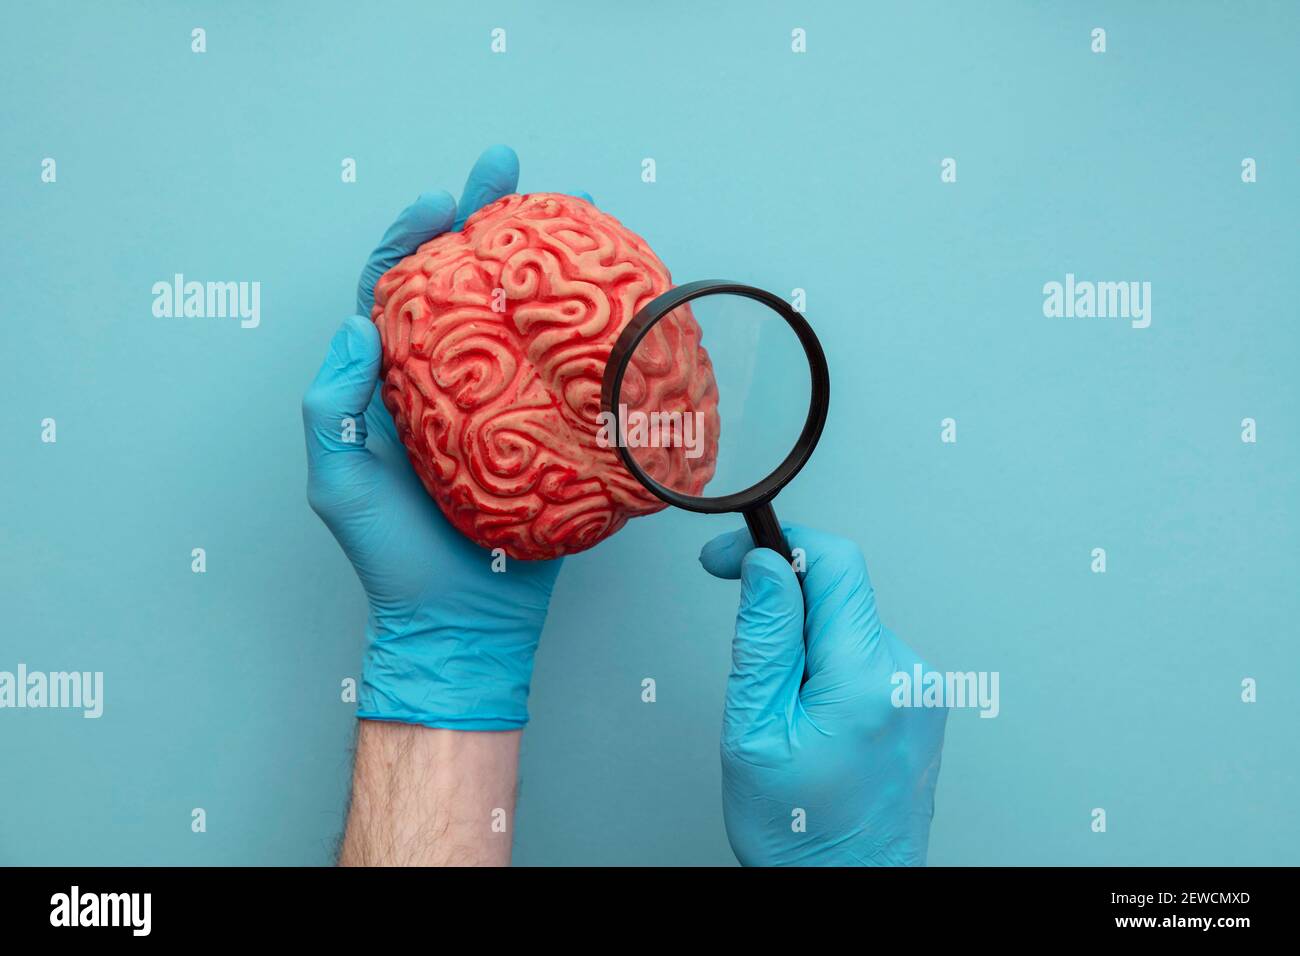 Arzt mit einer Lupe auf ein Gehirn zu sehen. Konzept der psychischen  Gesundheit Stockfotografie - Alamy